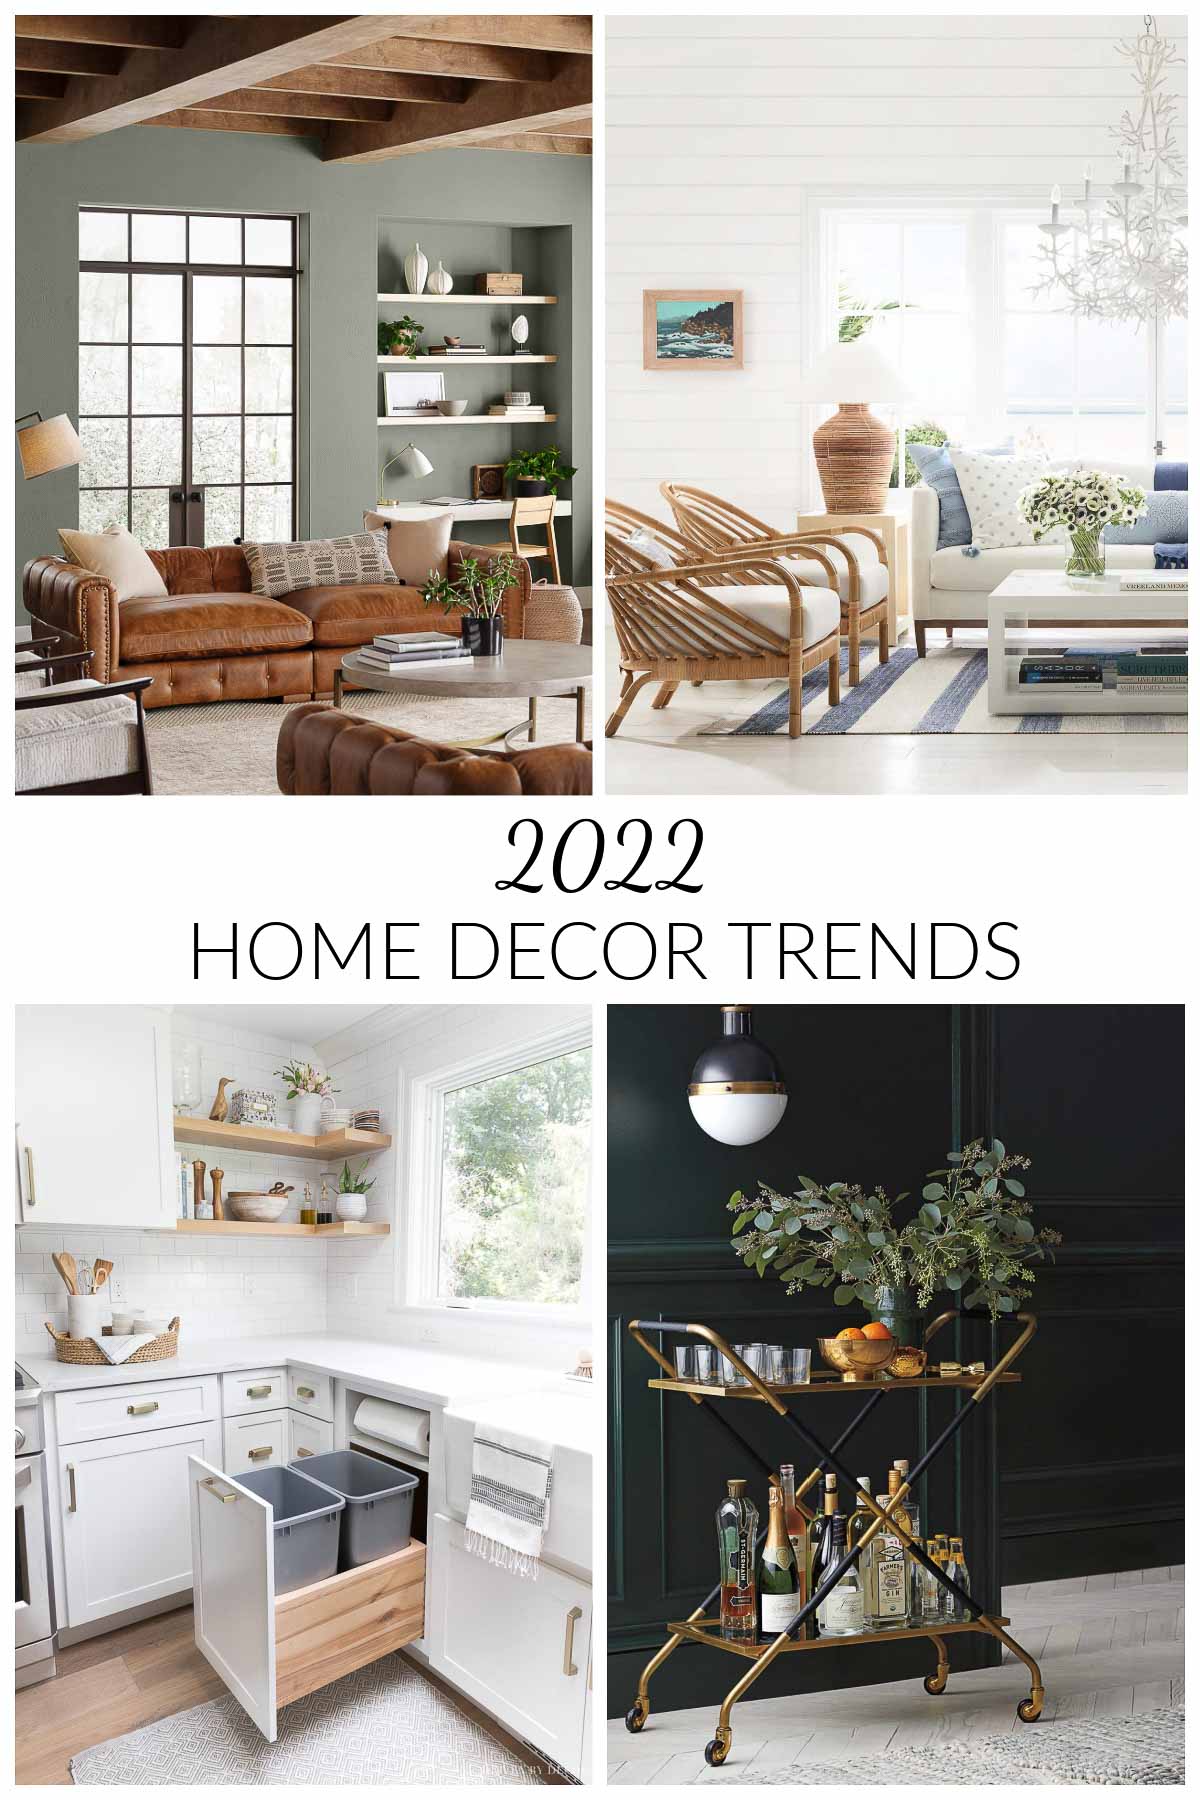 2022 Home Decor Trends